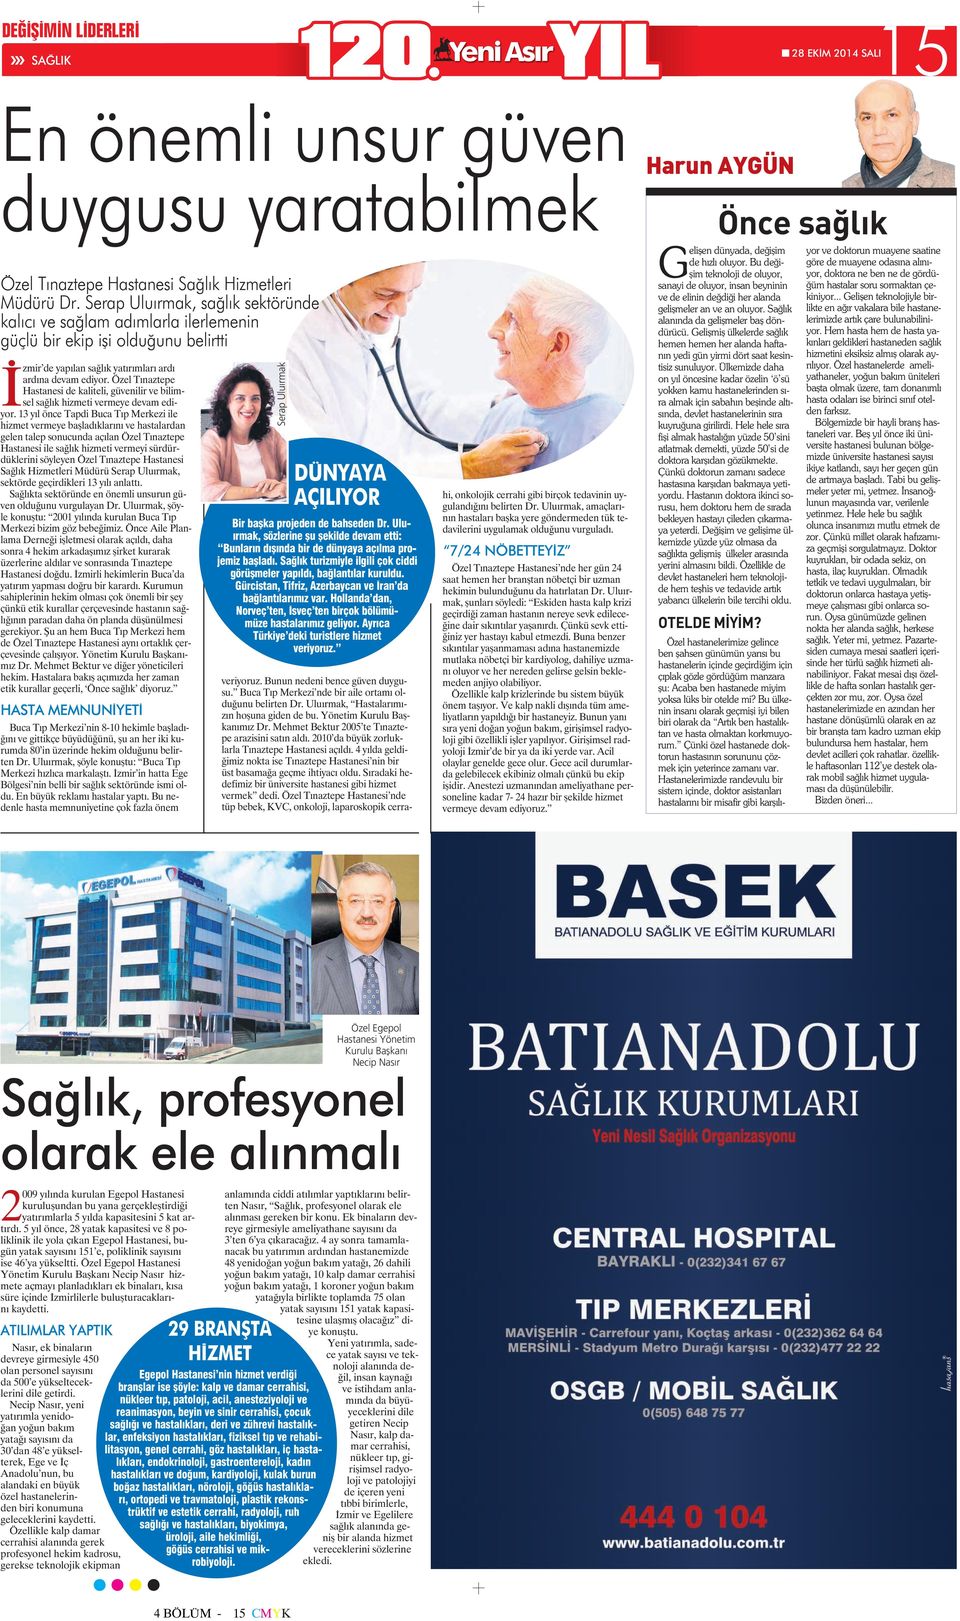 Özel Tınaztepe Hastanesi de kaliteli, güvenilir ve bilimsel sağlık hizmeti vermeye devam ediyor.